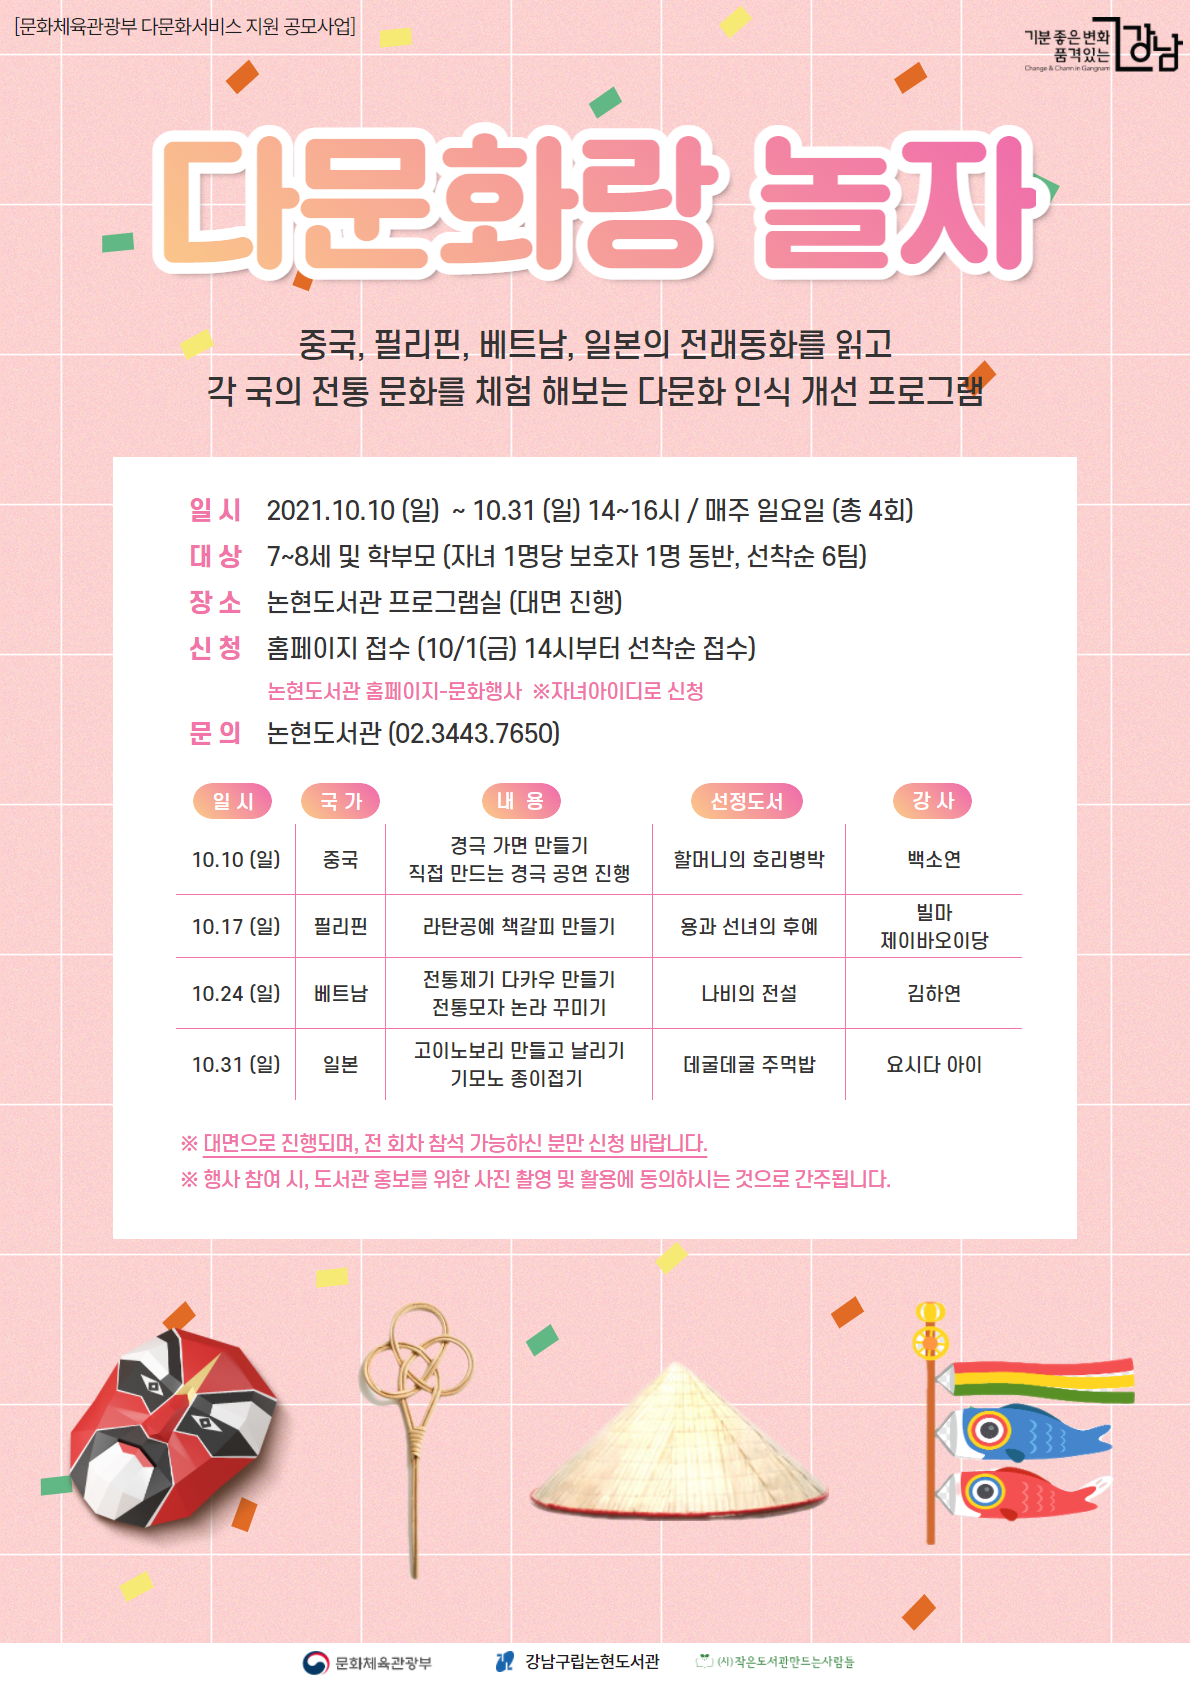 강남구립논현도서관, '다문화랑 놀자' 포스터